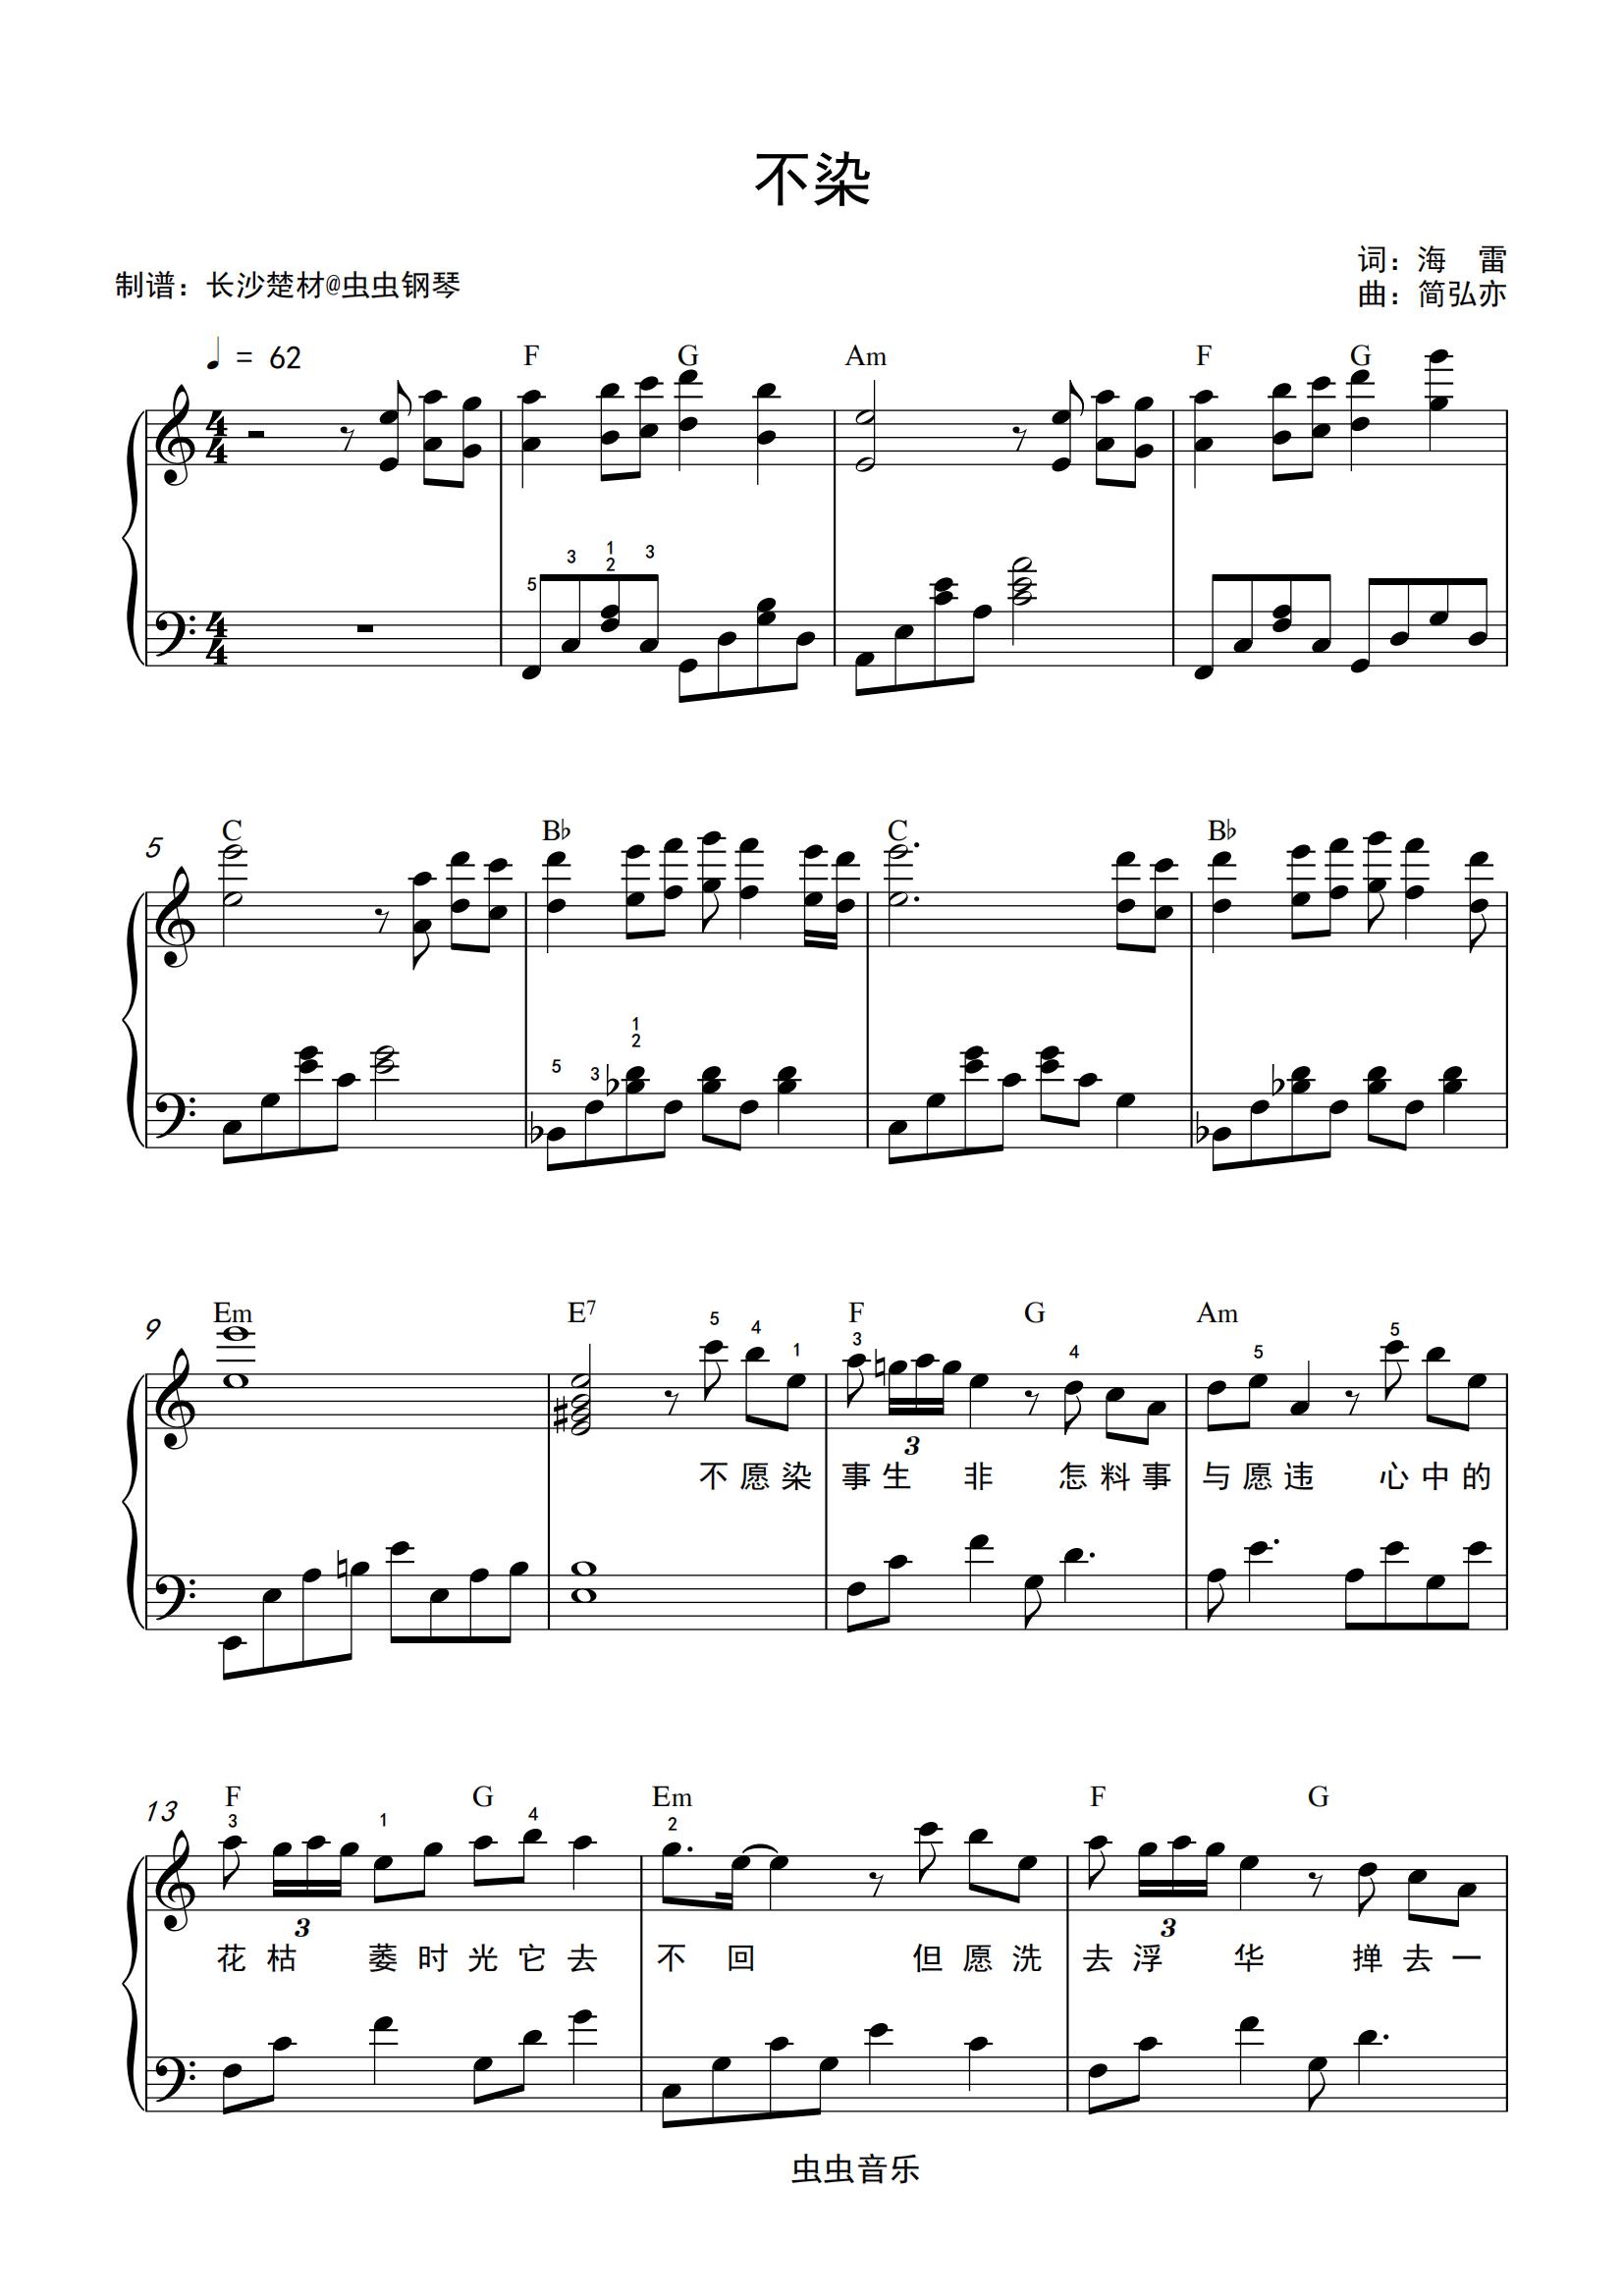 《不染》简单钢琴谱 - 毛不易左手右手慢速版 - 简易入门版 - 钢琴简谱